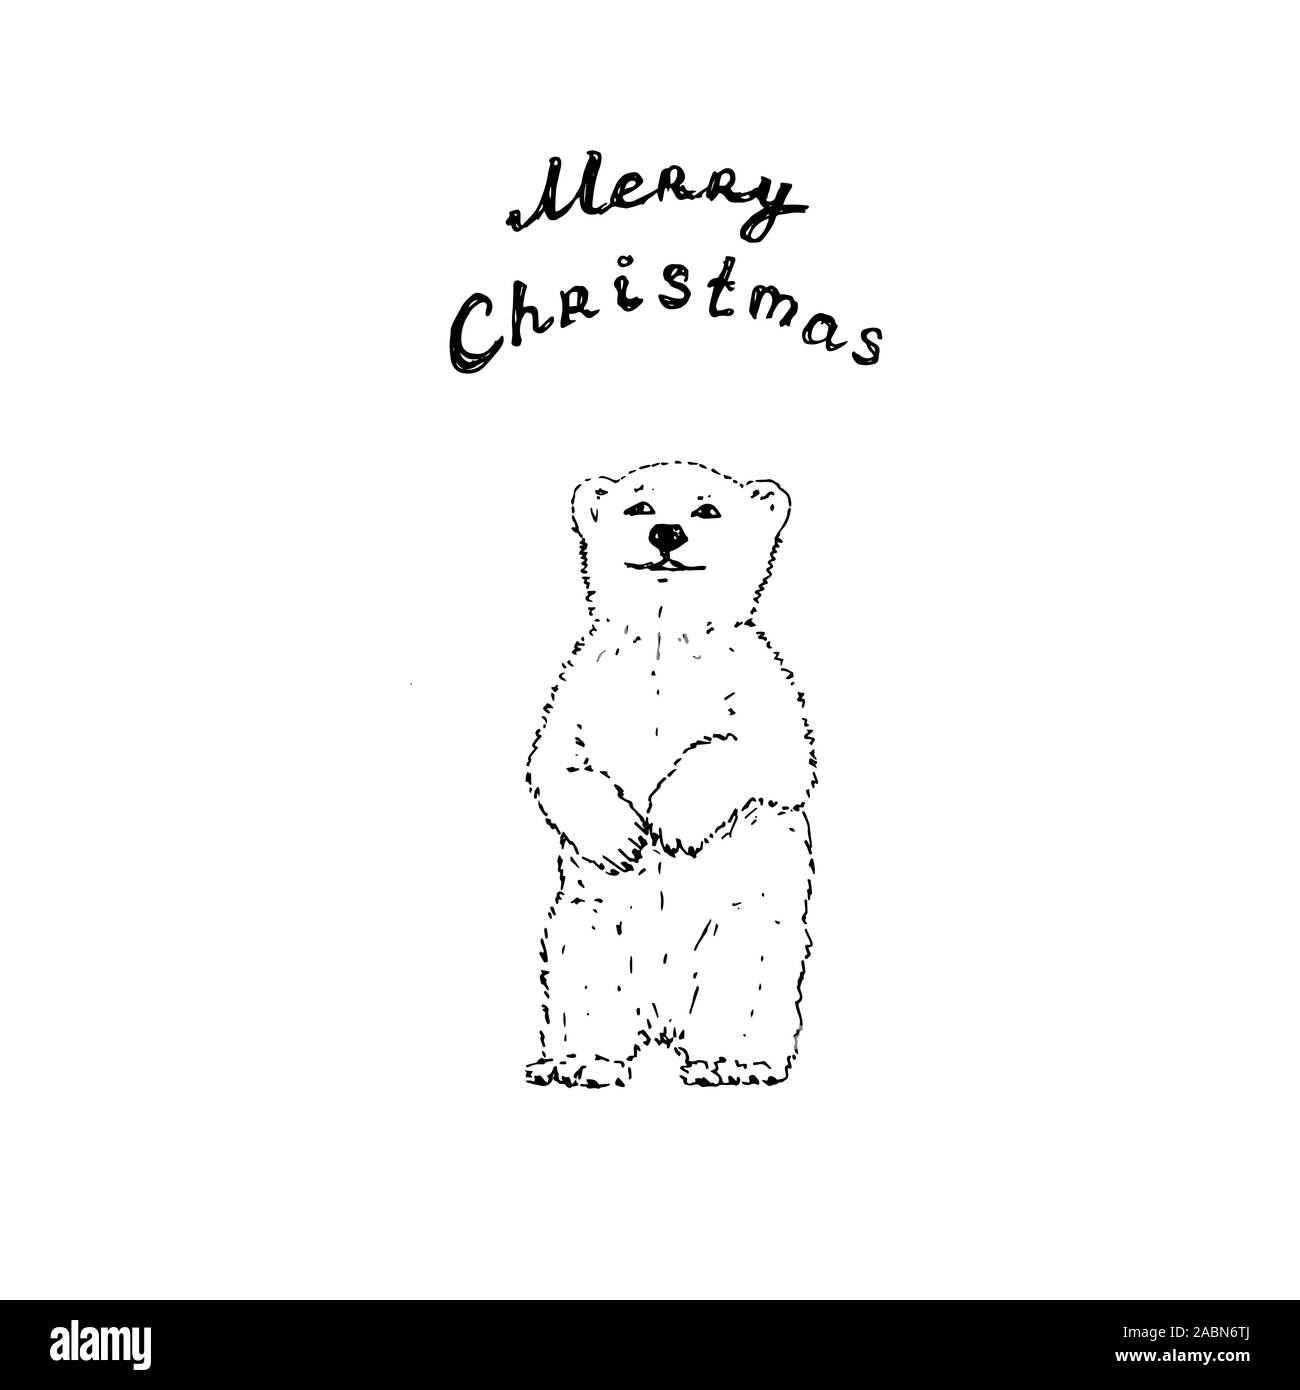 Oso Polar con Feliz Navidad letras. Contorno negro sobre fondo blanco. La imagen puede ser utilizado en tarjetas de felicitación, carteles, flyers, banners, logo, diseño, etc. ilustración vectorial. EPS10 Ilustración del Vector